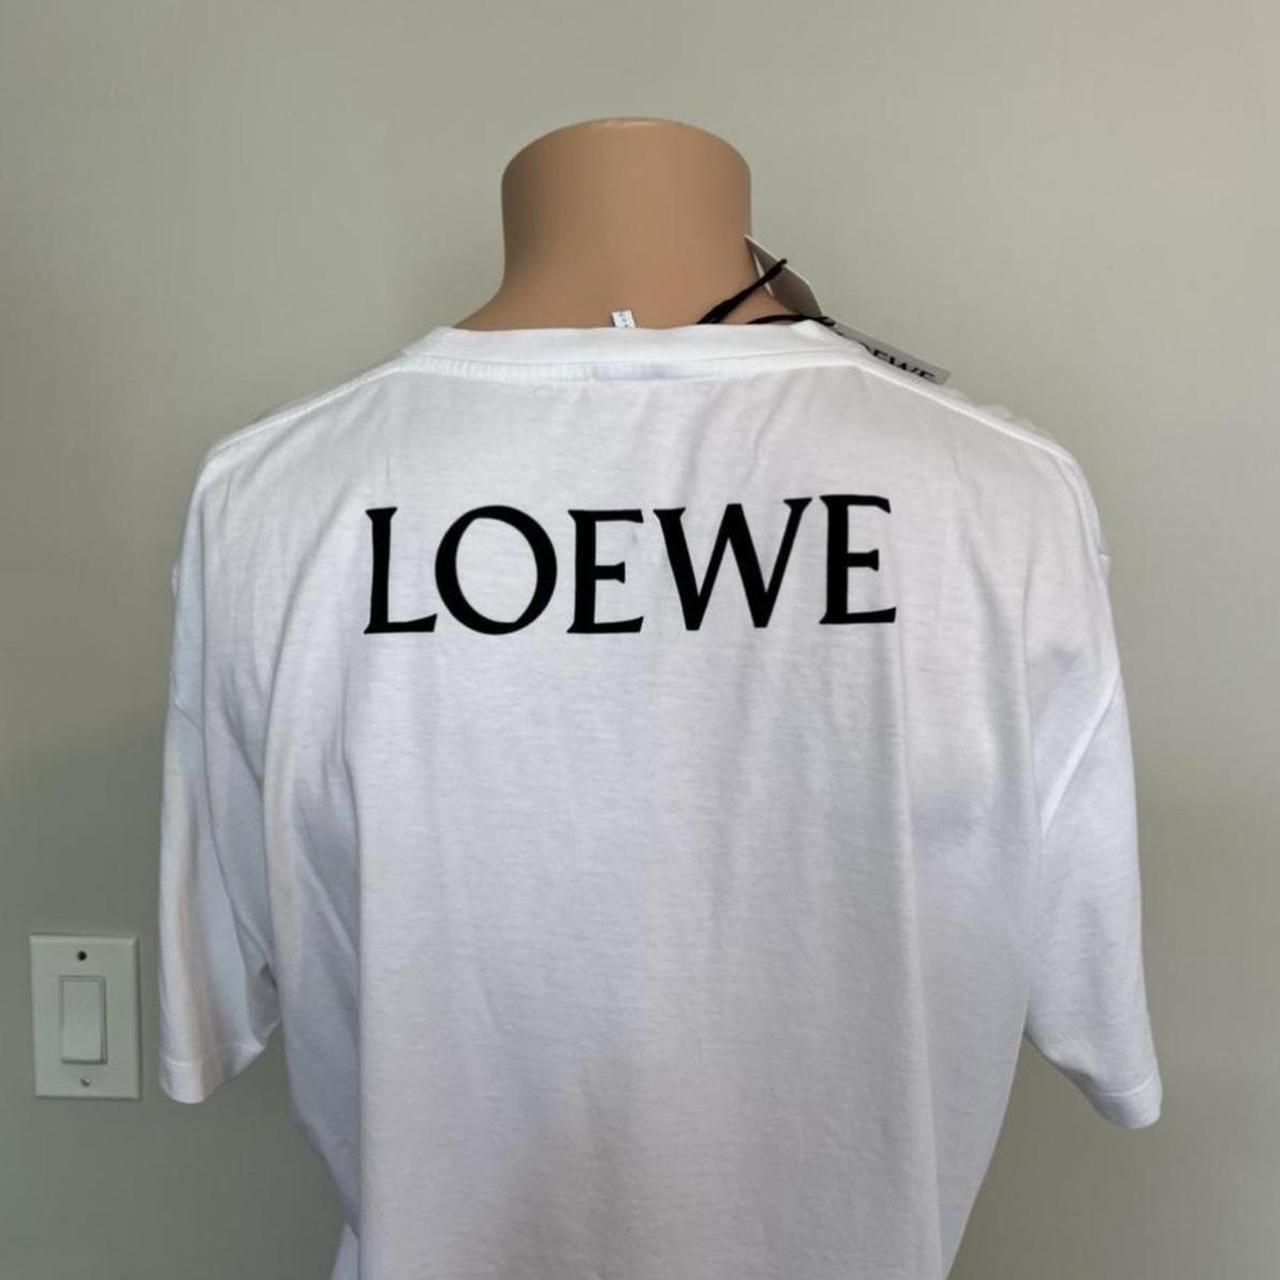 Loewe Men's T-shirt